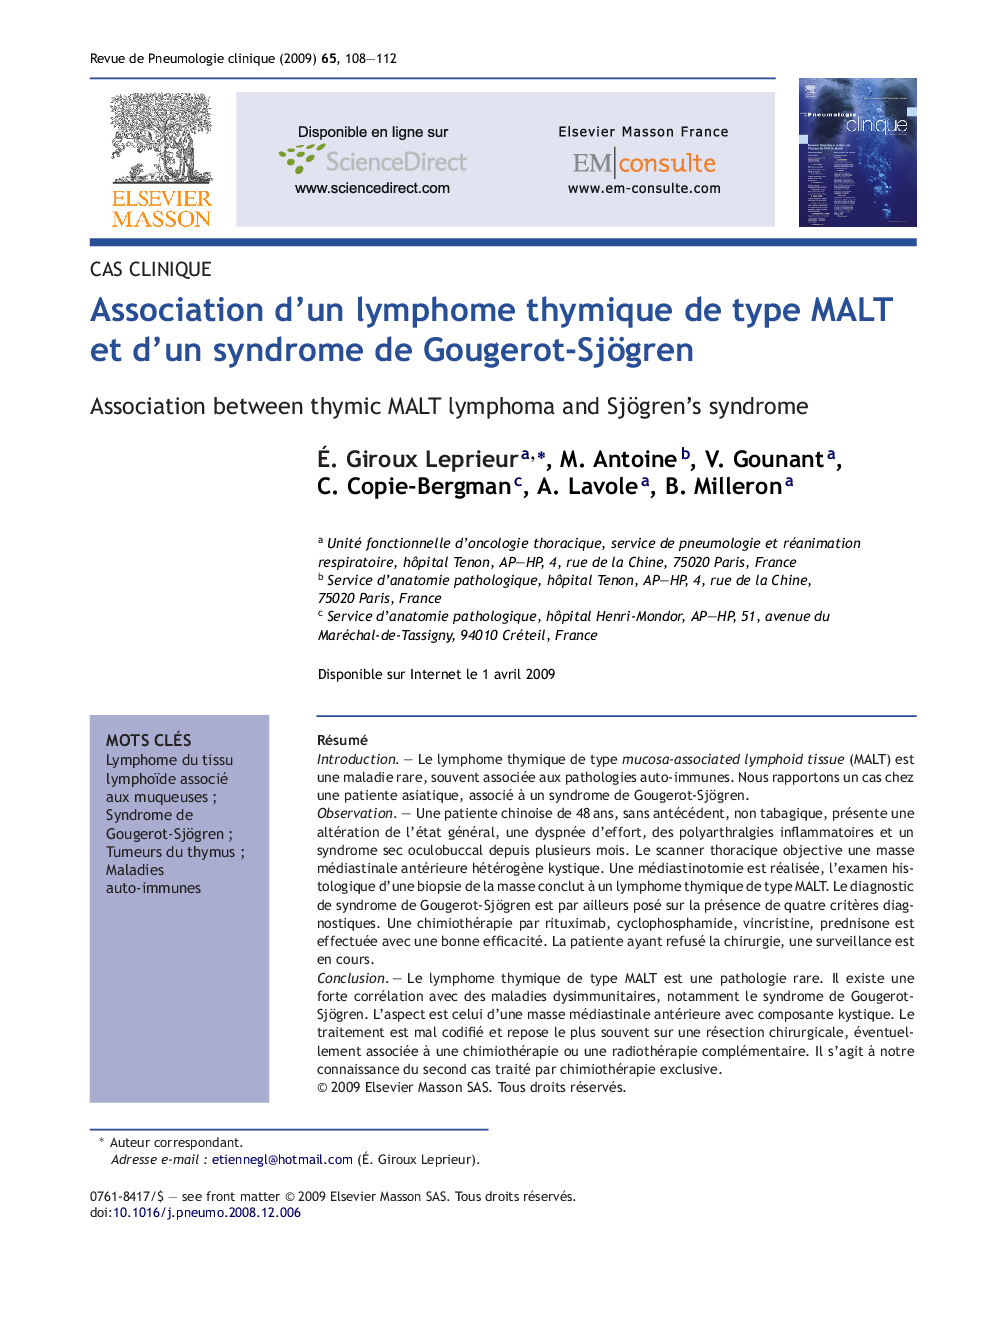 Association d'un lymphome thymique de type MALT et d'un syndrome de Gougerot-Sjögren